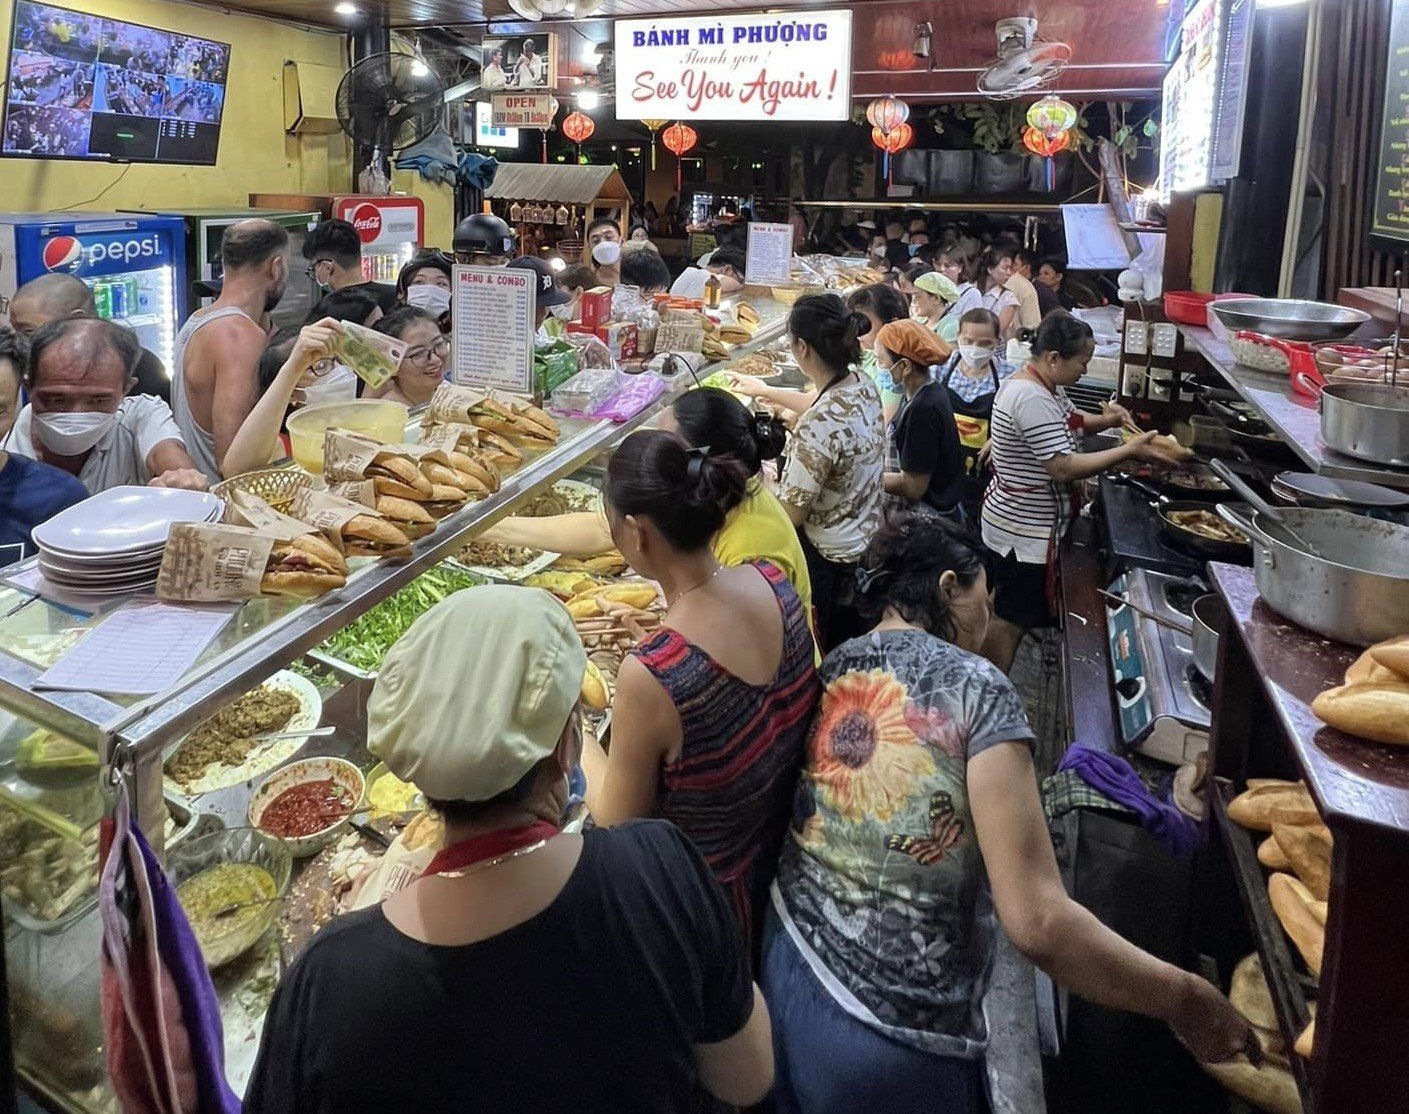  Quảng Nam: Đề nghị xử lý tiệm bánh mì Phượng để xảy ra ngộ độc hàng trăm người - Ảnh 2.